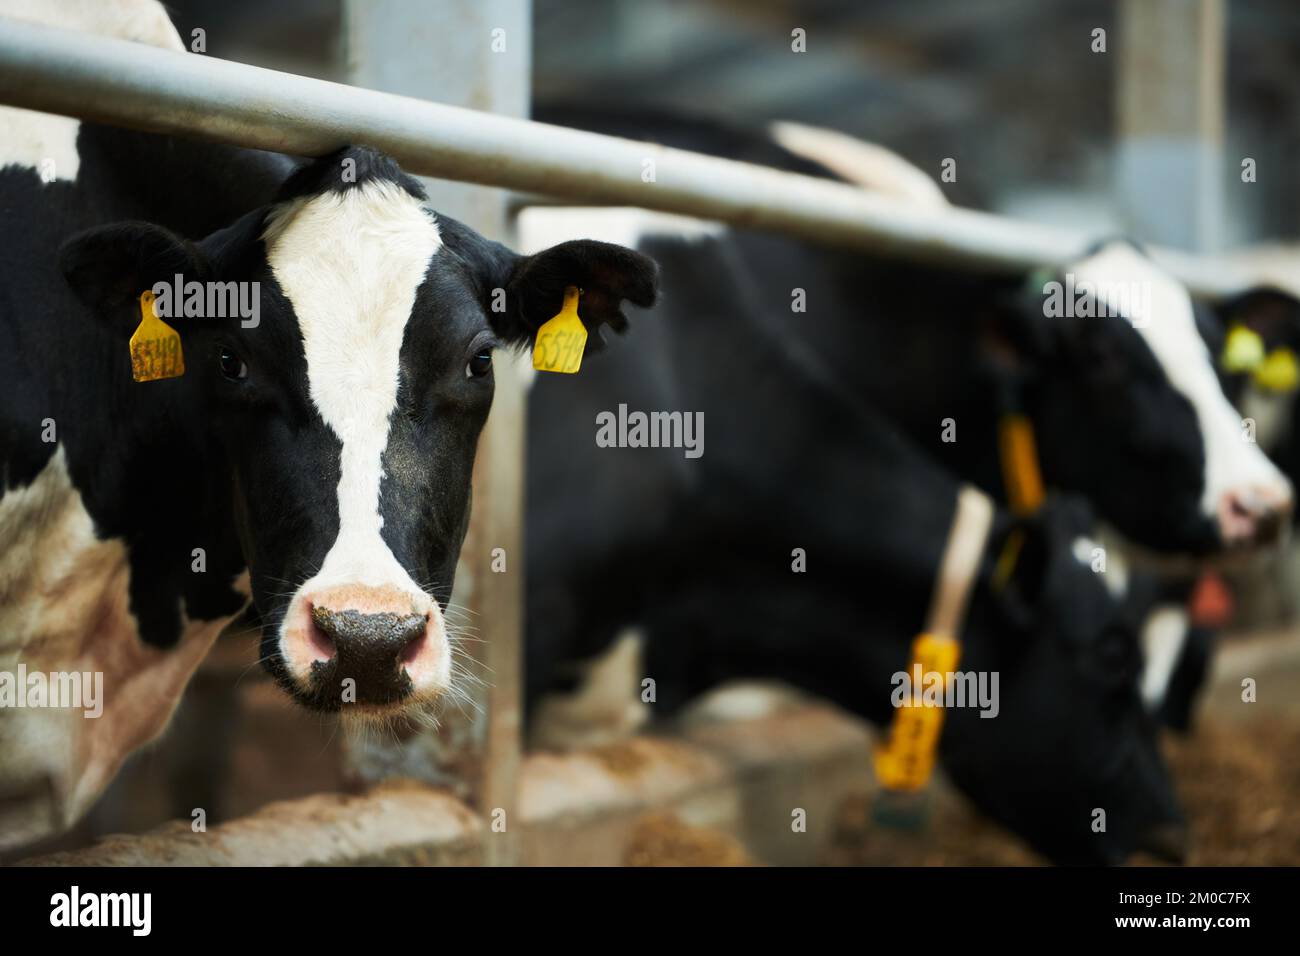 Vache à lait de race noire et blanche regardant la caméra tout en se tenant debout dans le lâché contre d'autres animaux mangeant de la nourriture à partir de l'alimenteur Banque D'Images